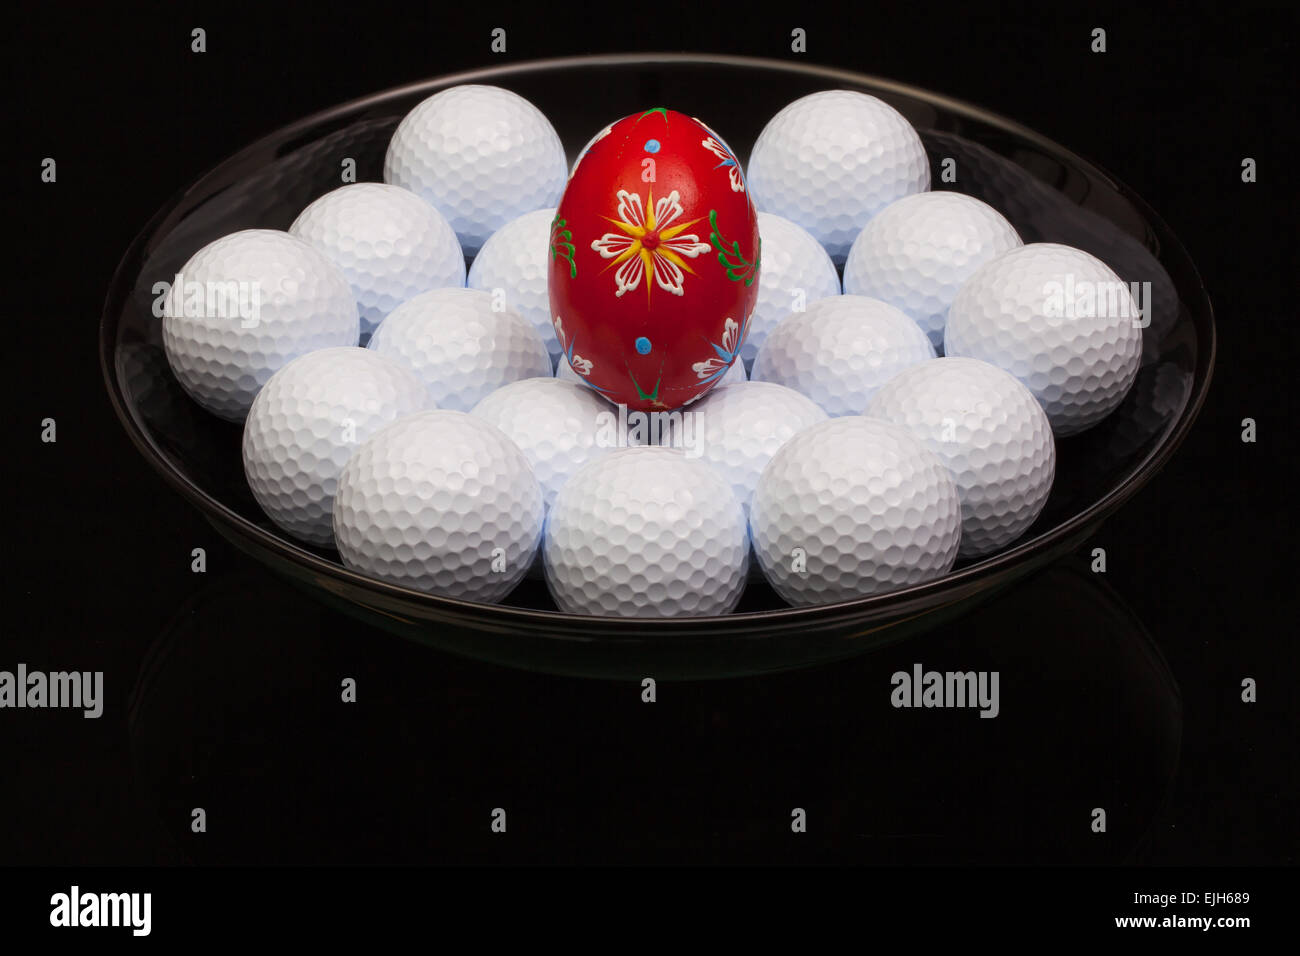 Las bolas de golf y el huevo en un tazón negro Foto de stock